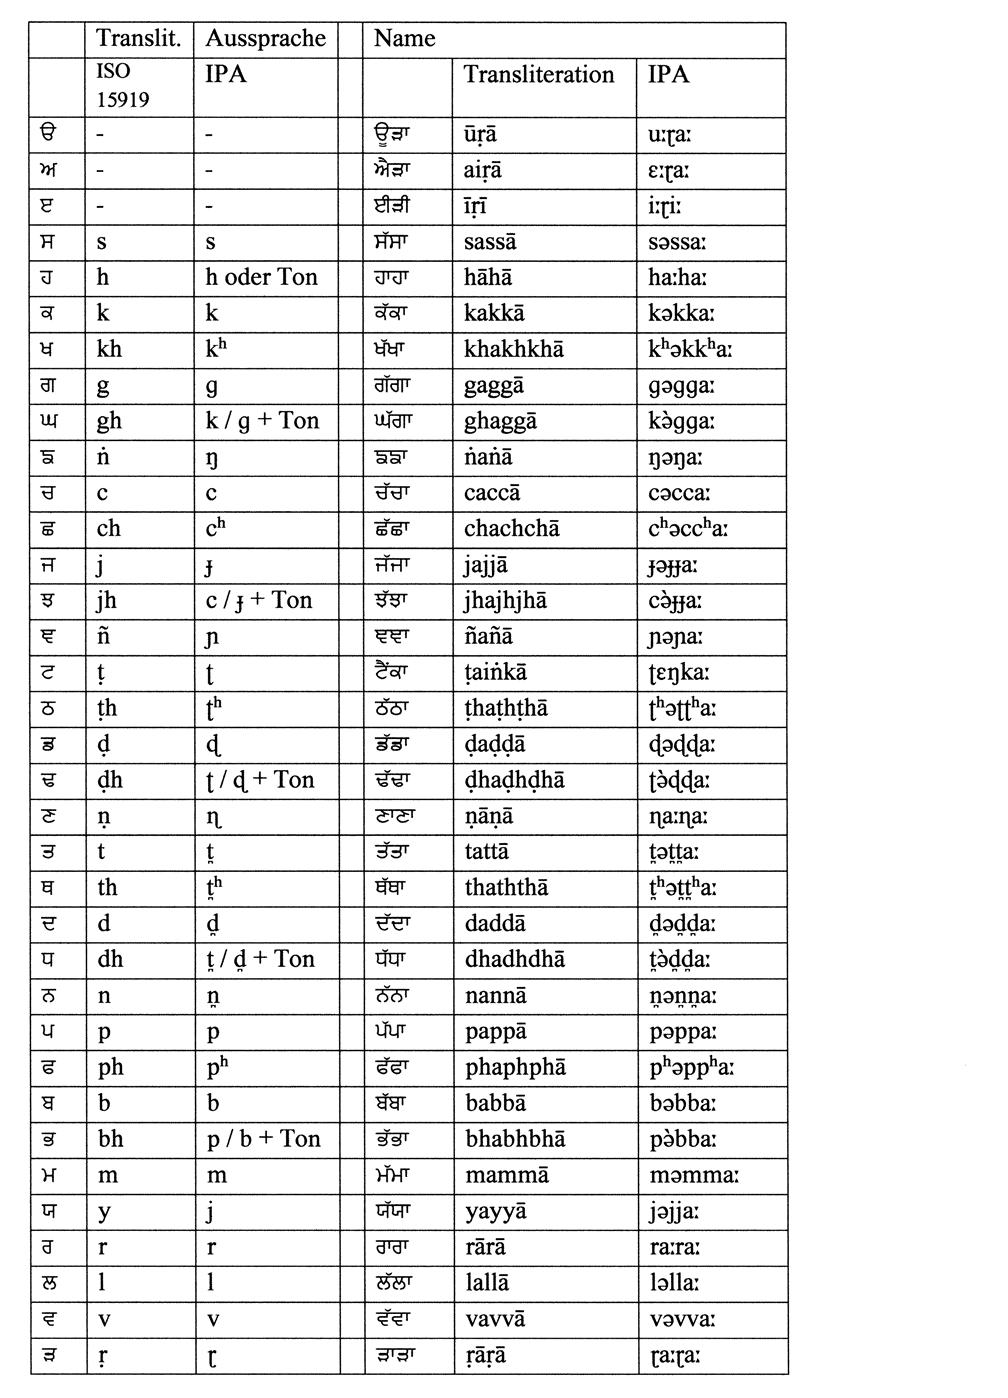 Tabelle mit Namre, Transliteration und Aussprache